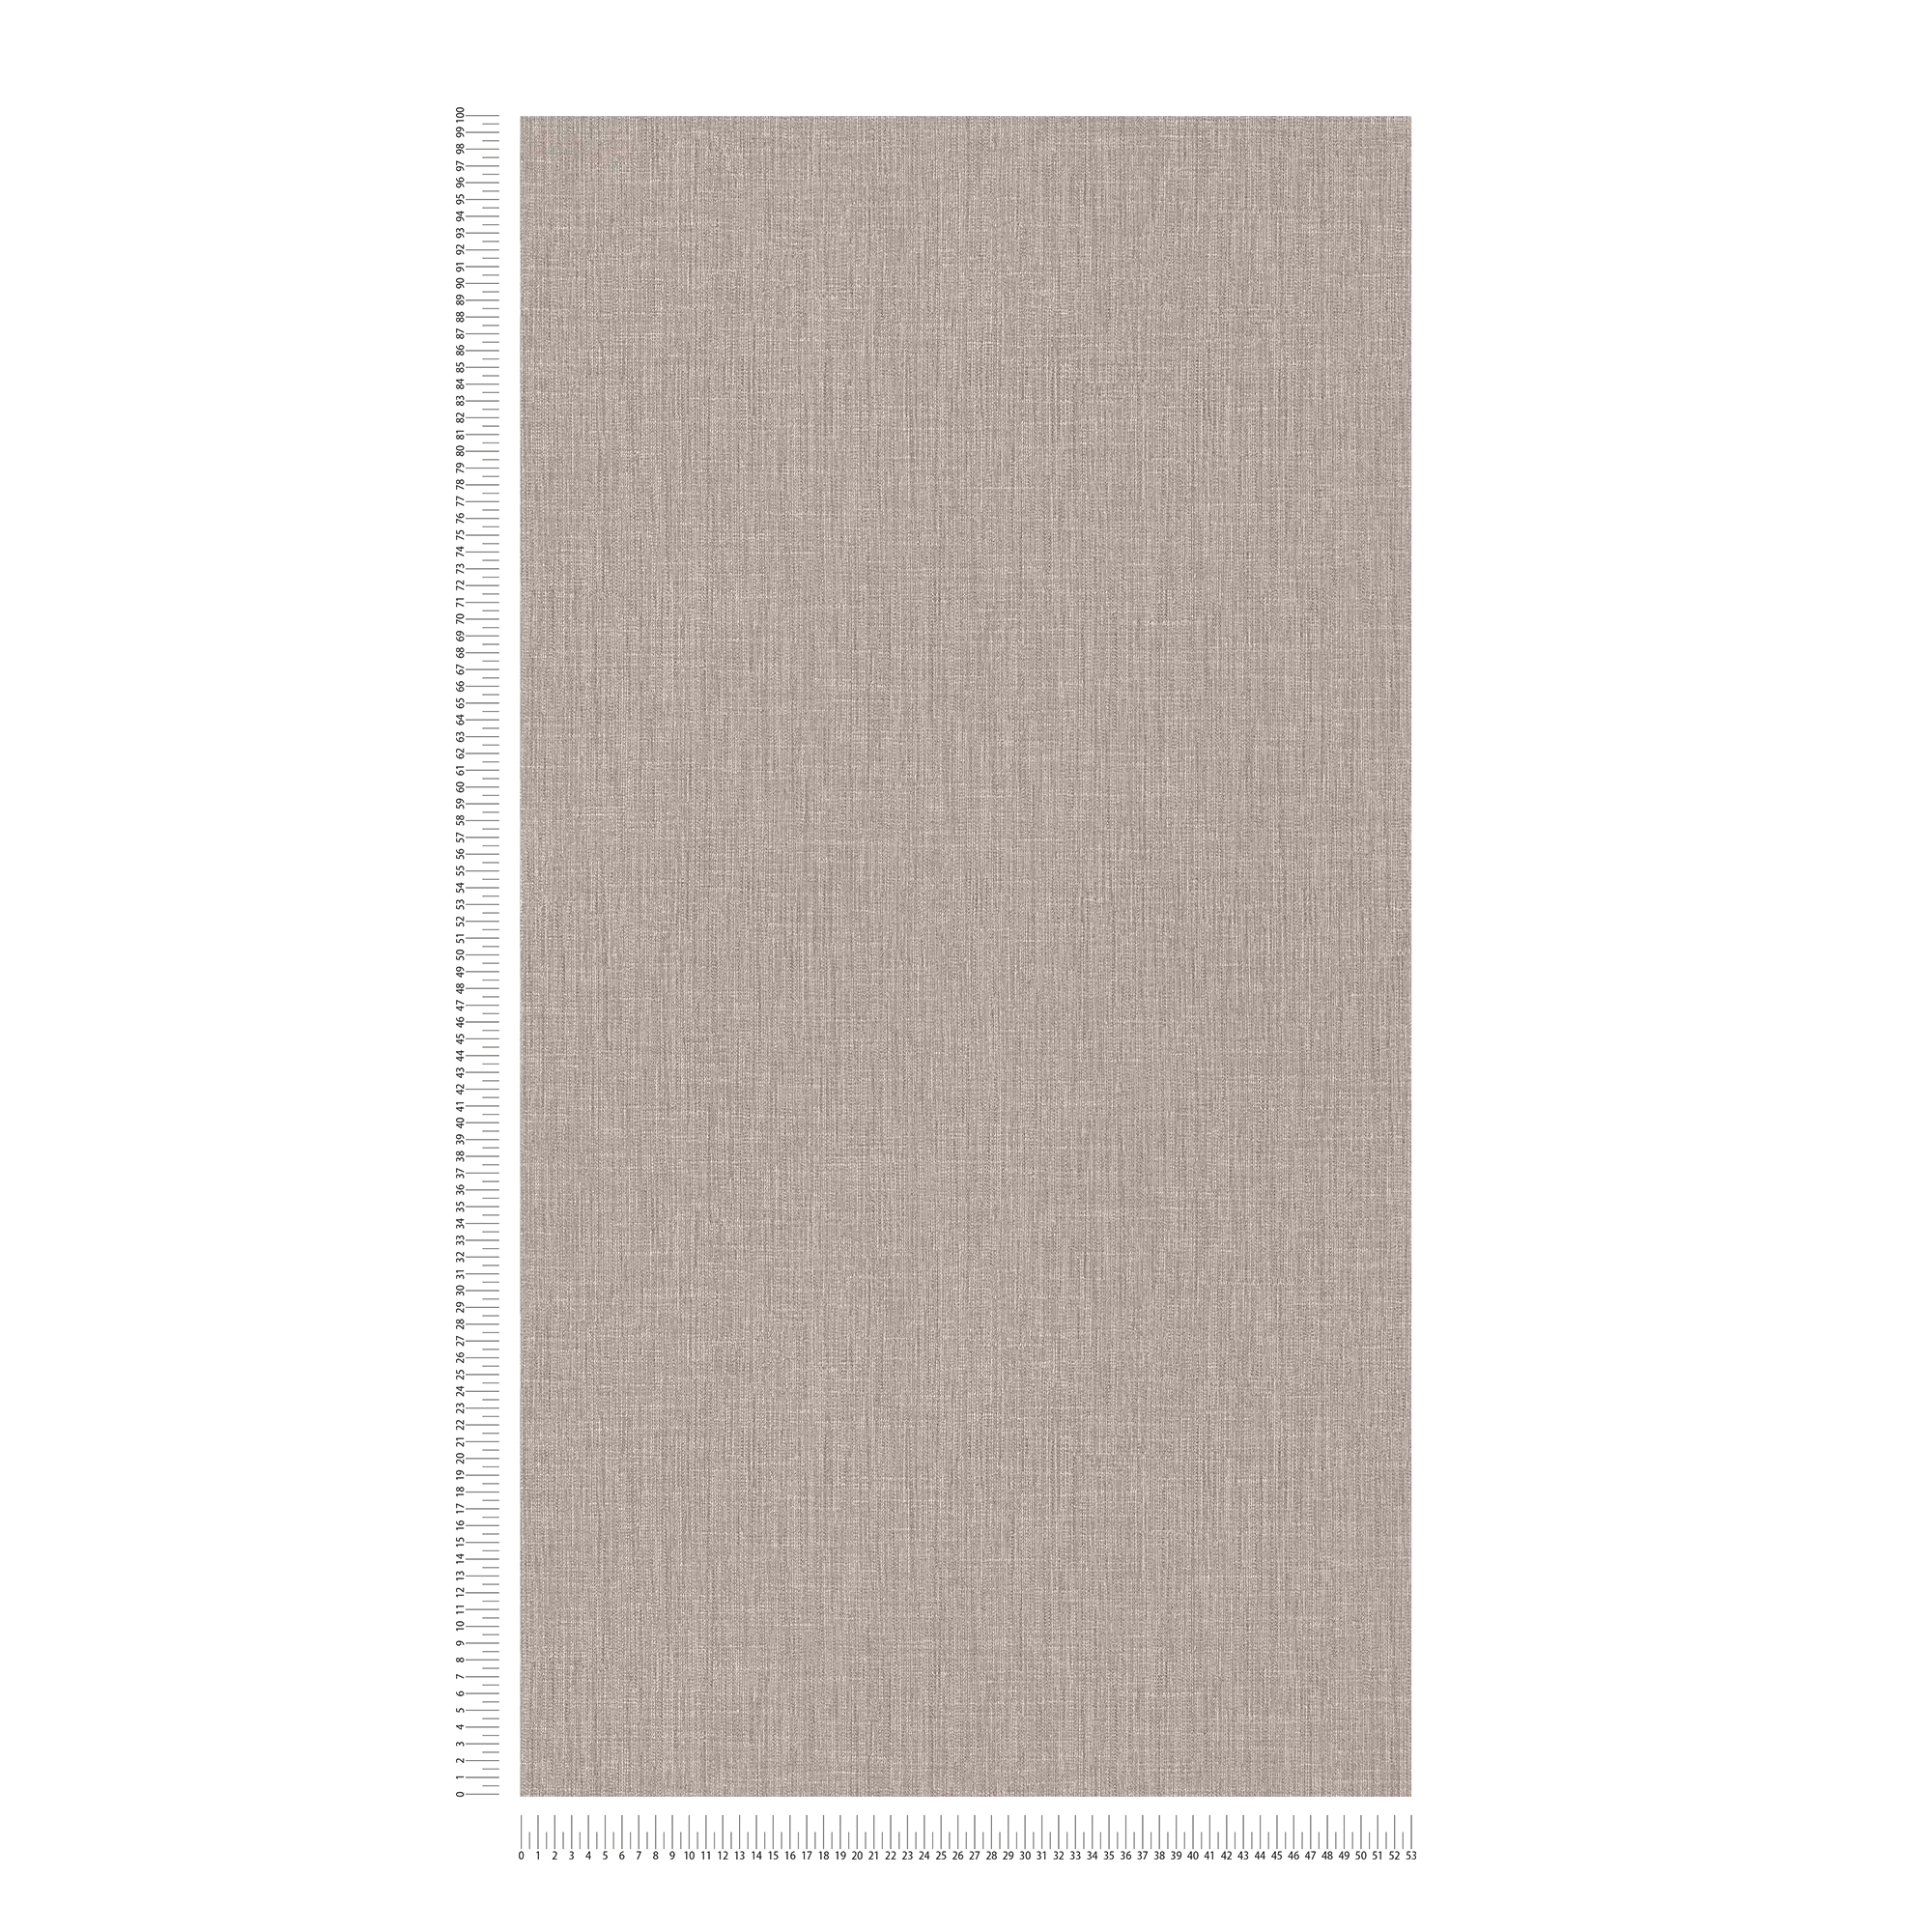             Papel pintado de unidad de sombreado con patrón tono sobre tono - beige, crema, blanco
        